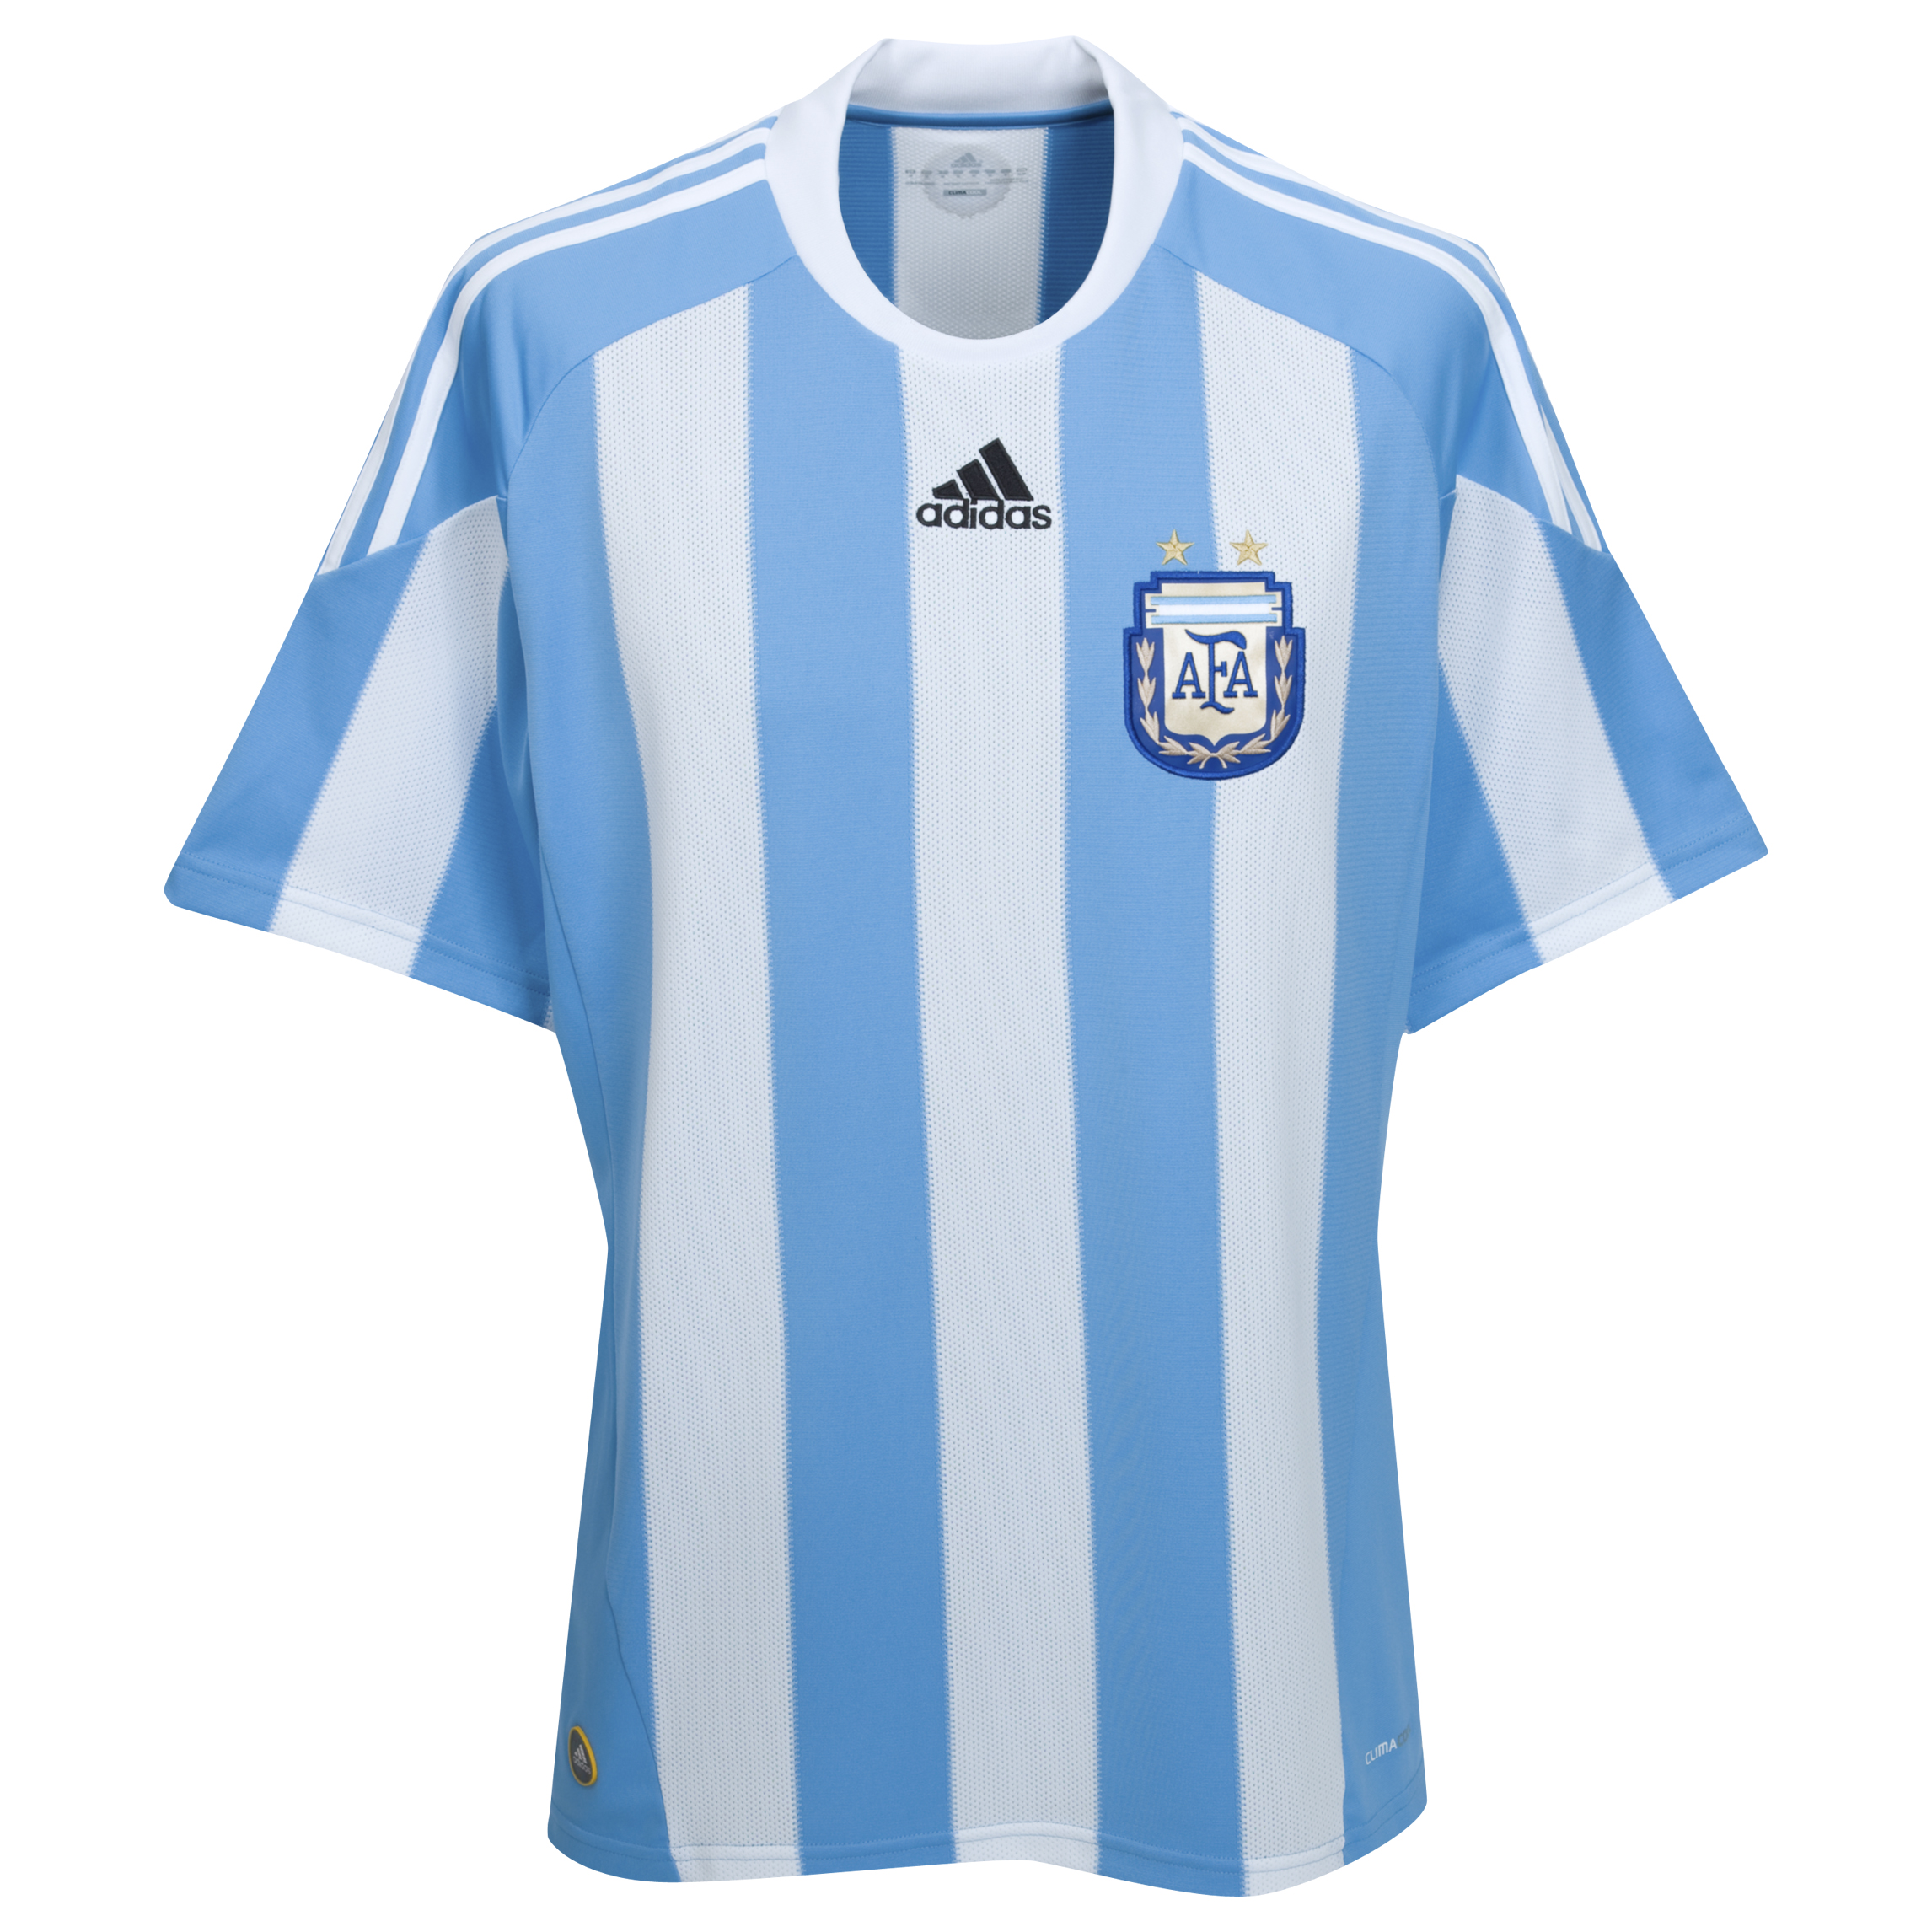 ملابس المنتخبات لكأس العالم2010م Kb-63732